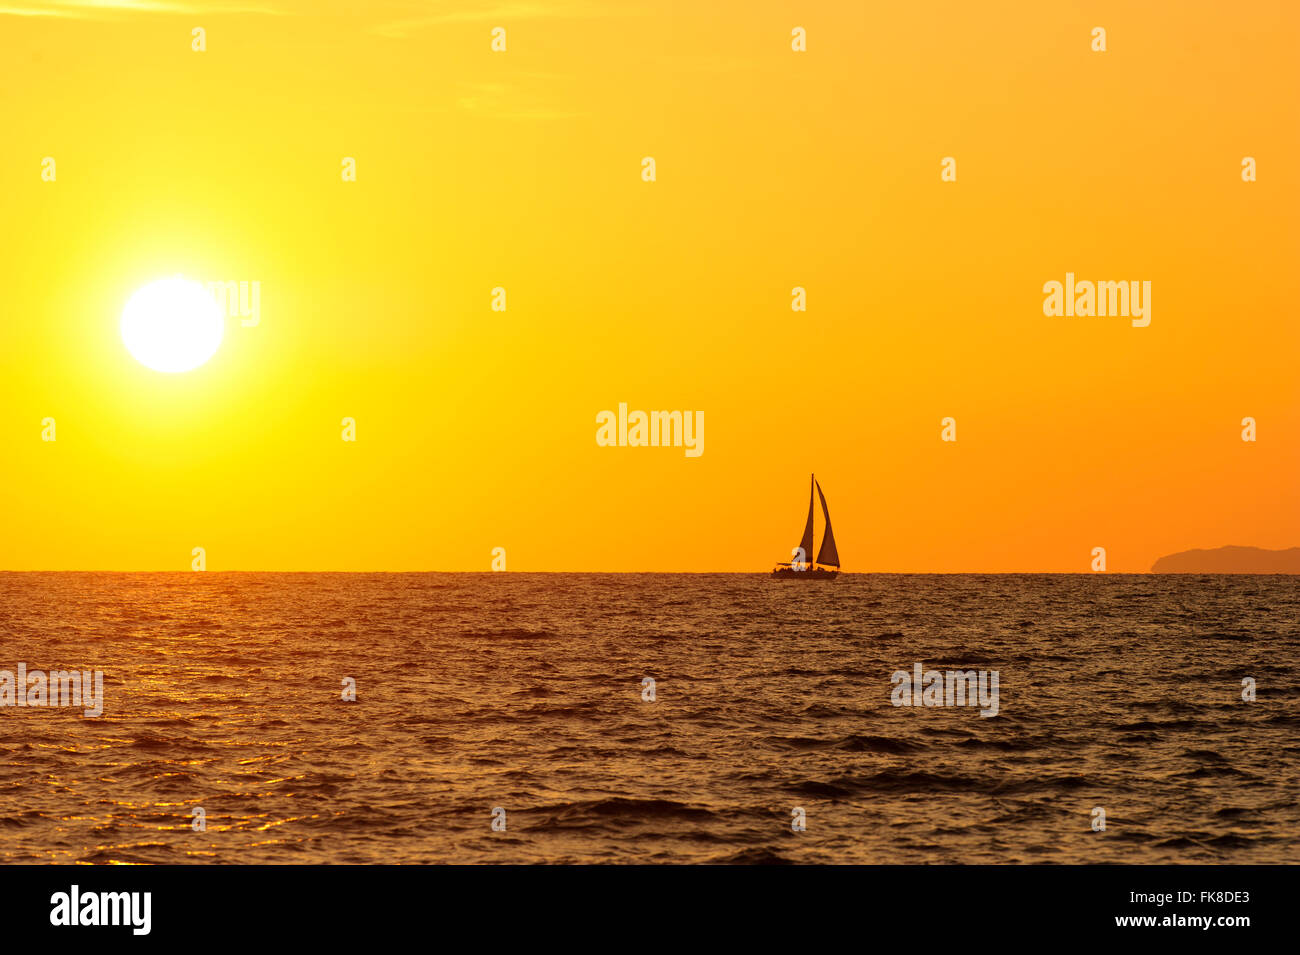 Voilier coucher du soleil est la silhouette d'un voilier avec un blanc chaud brûlant de soleil sur l'océan horizon contre un ciel orange. Banque D'Images